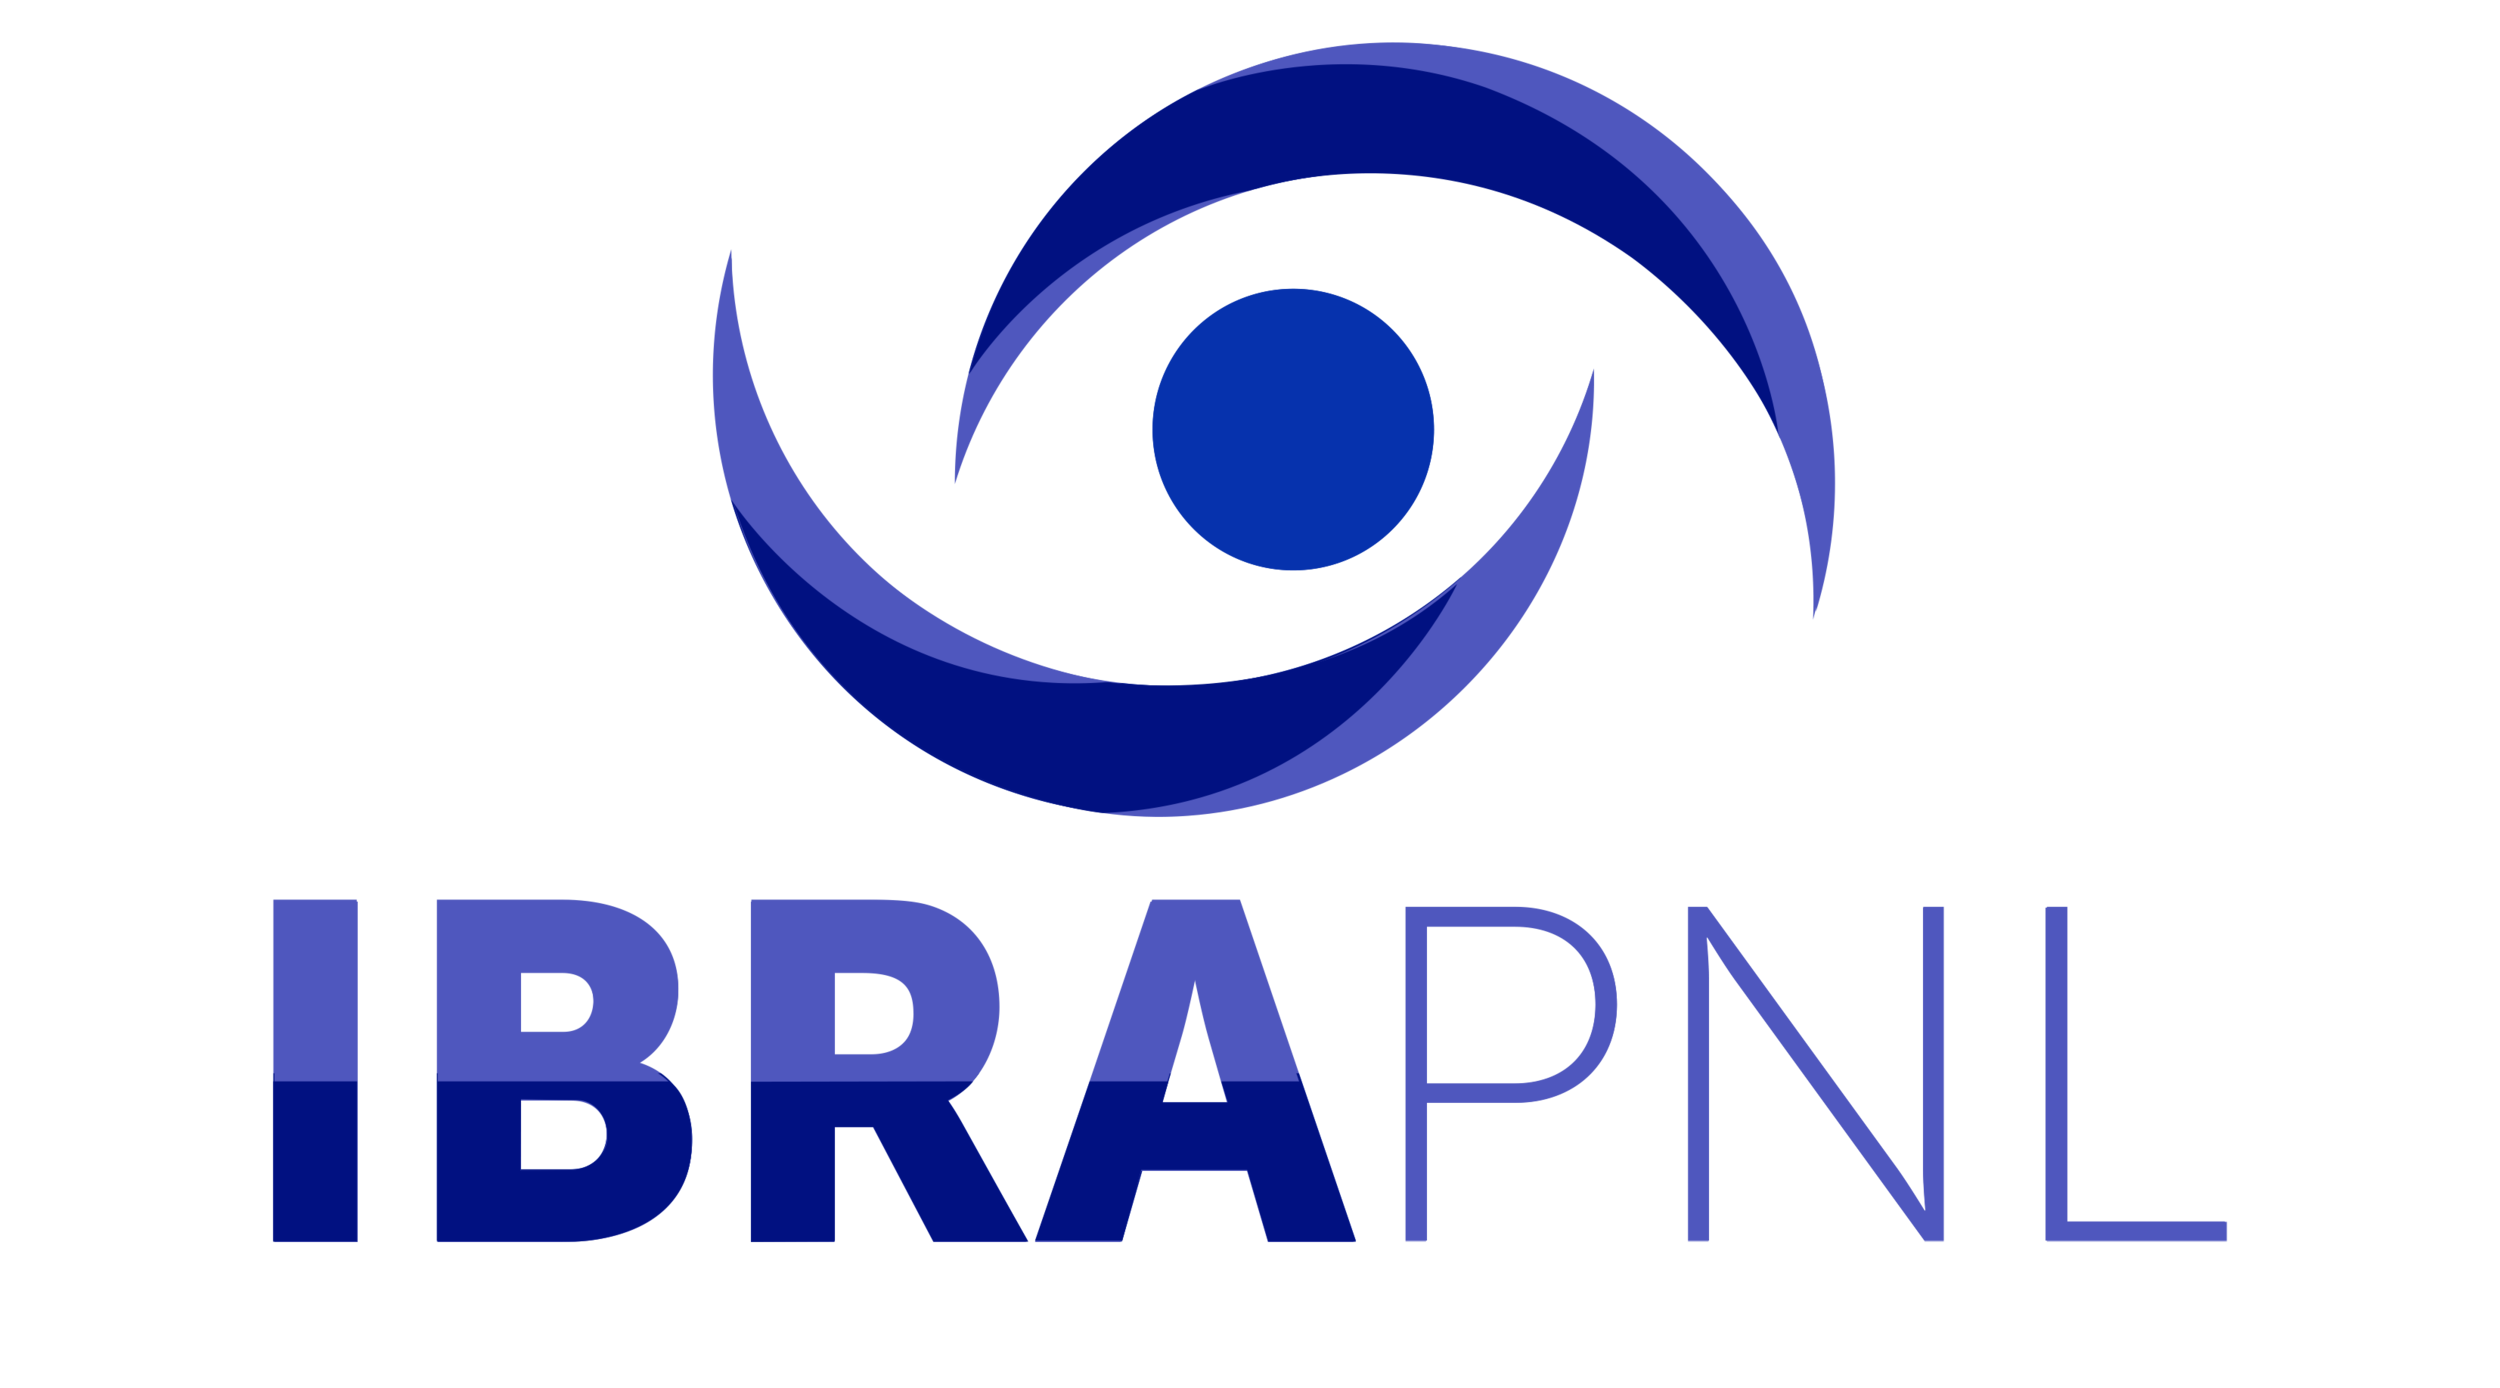 IBRAPNL &mdash; Instituto Brasileiro de Programação Neurolinguística